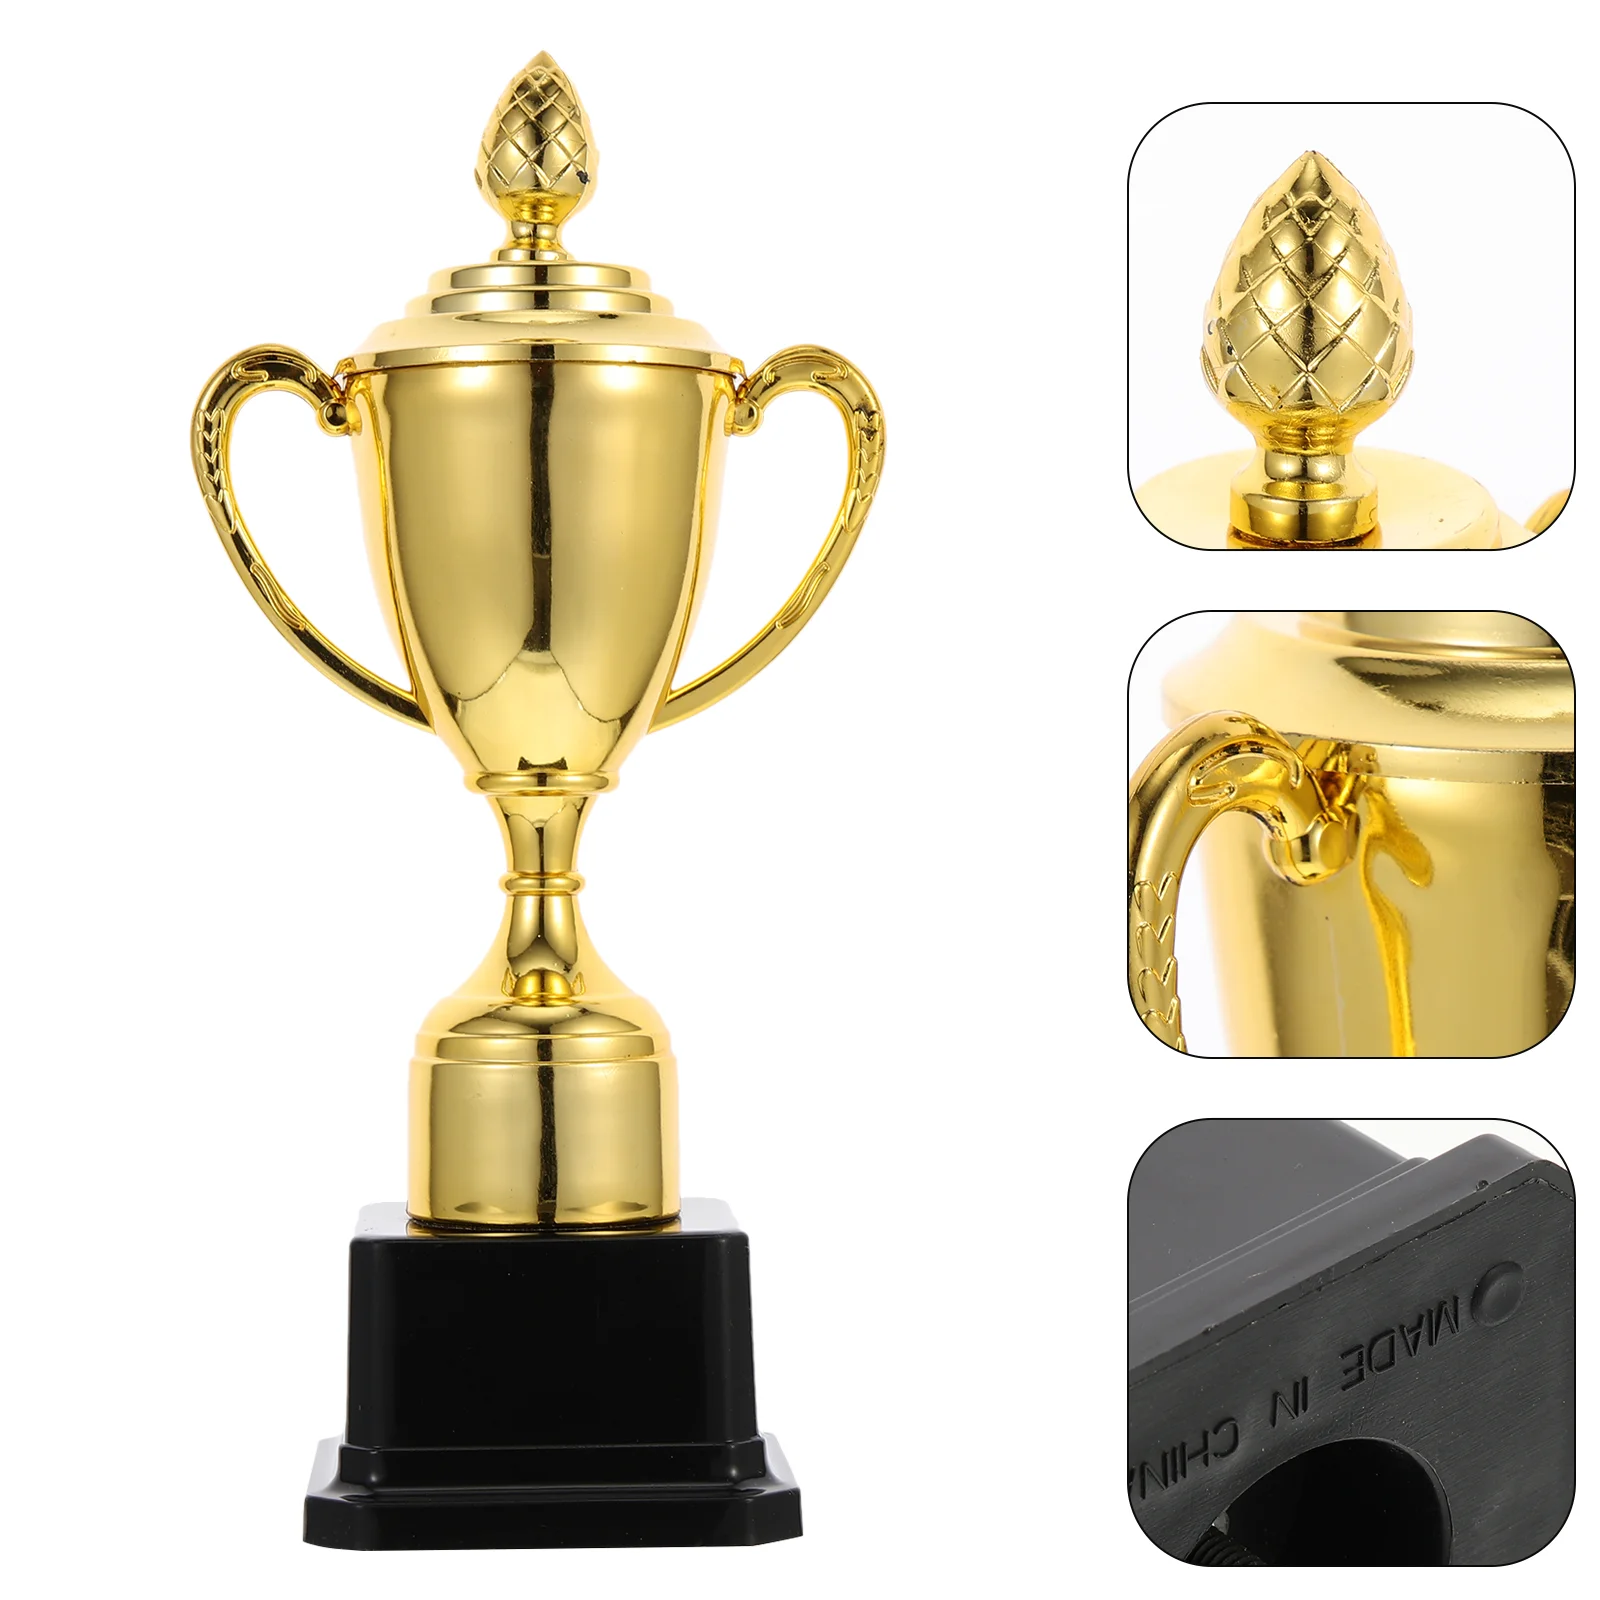 

Трофей Кубок награды золотые мини награды победитель детская вечеринка соревнование приз тропы золотые чаши награда сувениры игра Спорт